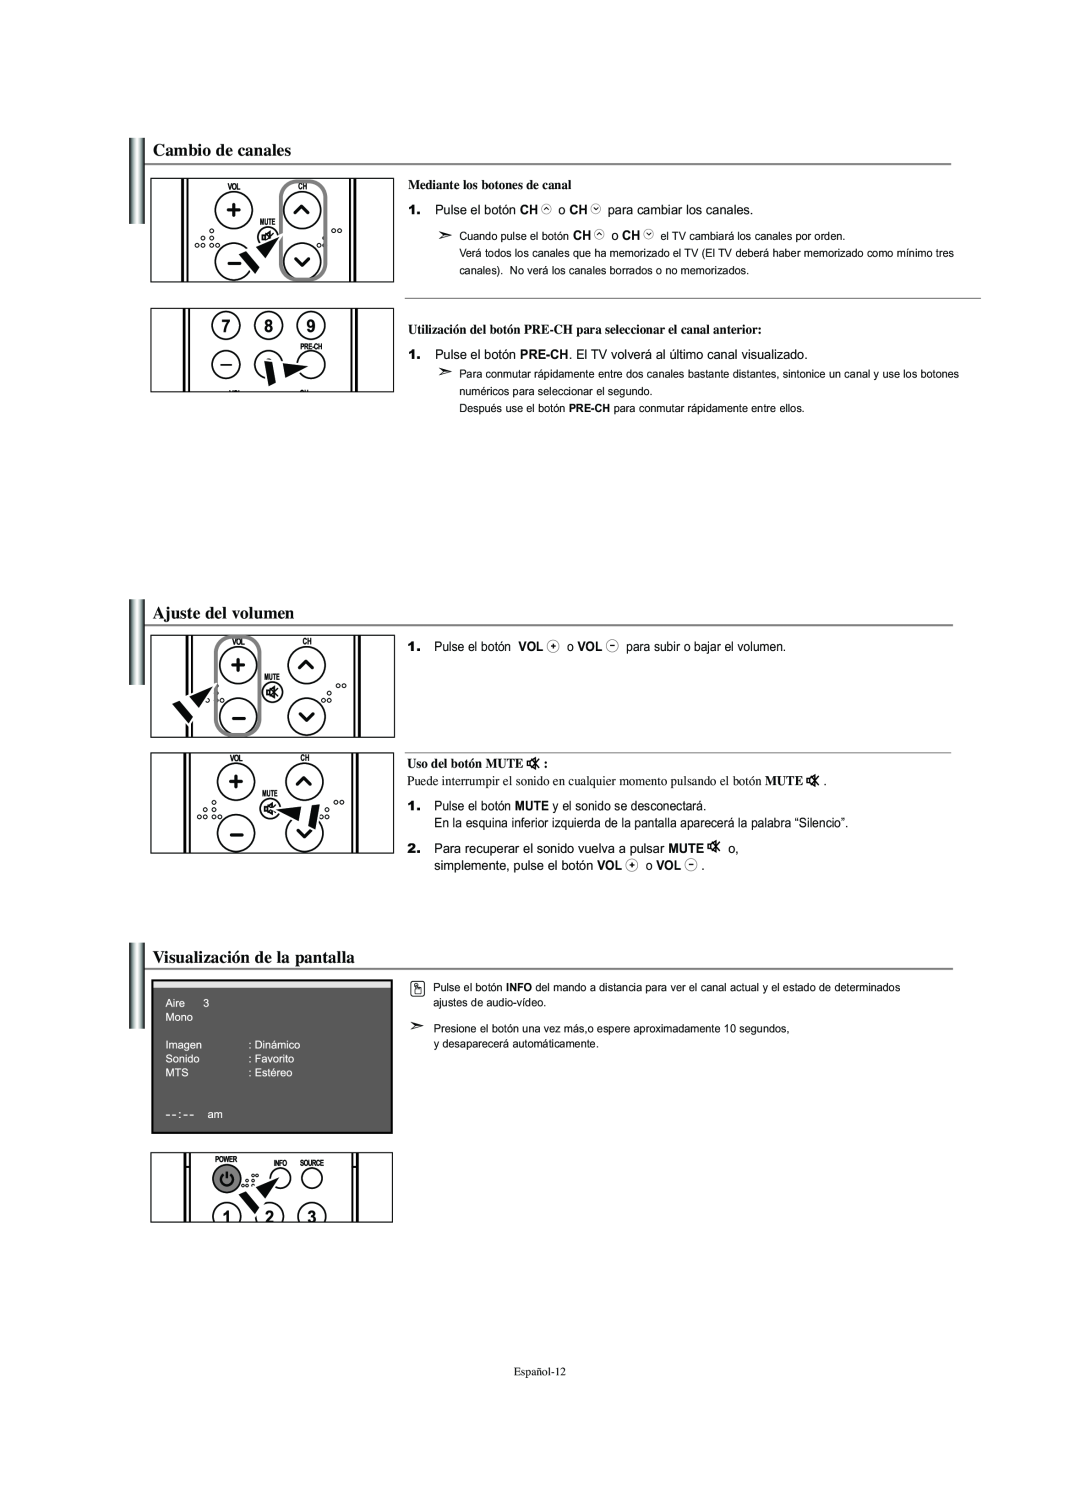 Samsung LN-S2341W manual Cambio de canales, Ajuste del volumen, Visualización de la pantalla, Mediante los botones de canal 